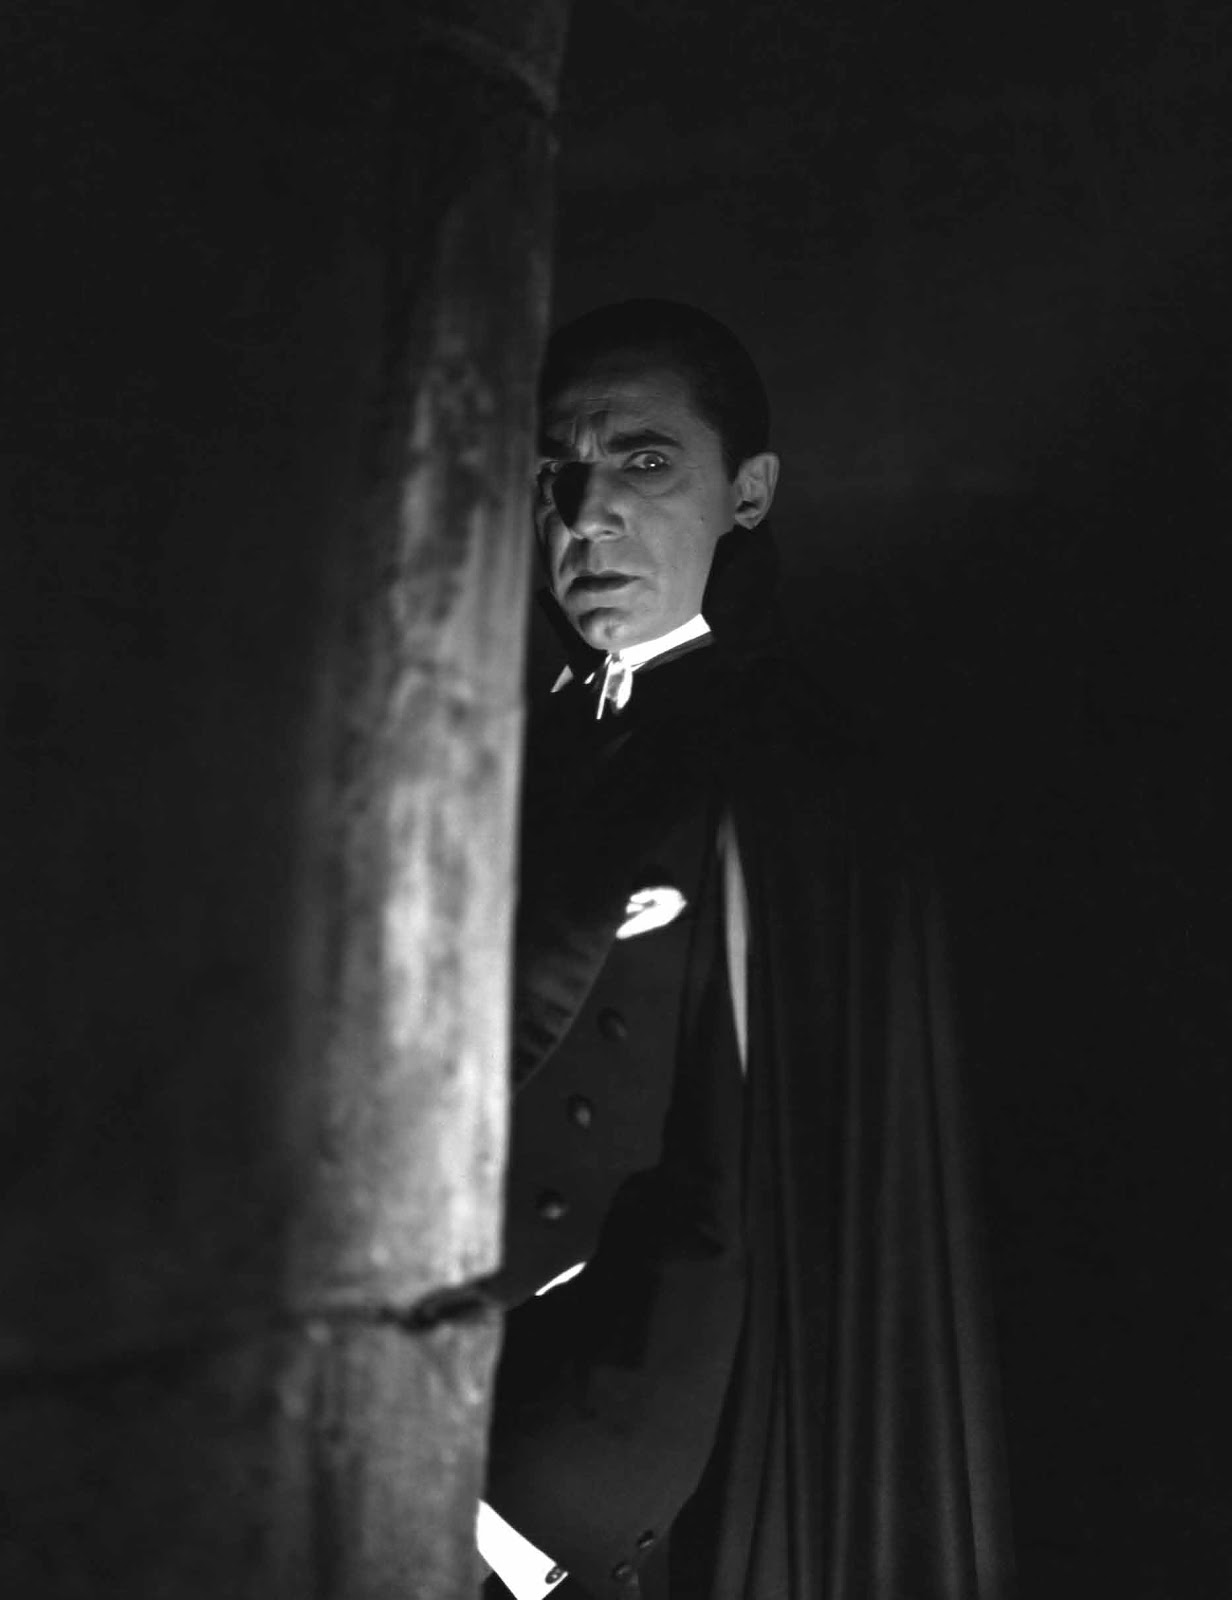 [46+] Bela Lugosi Dracula Wallpapers | WallpaperSafari